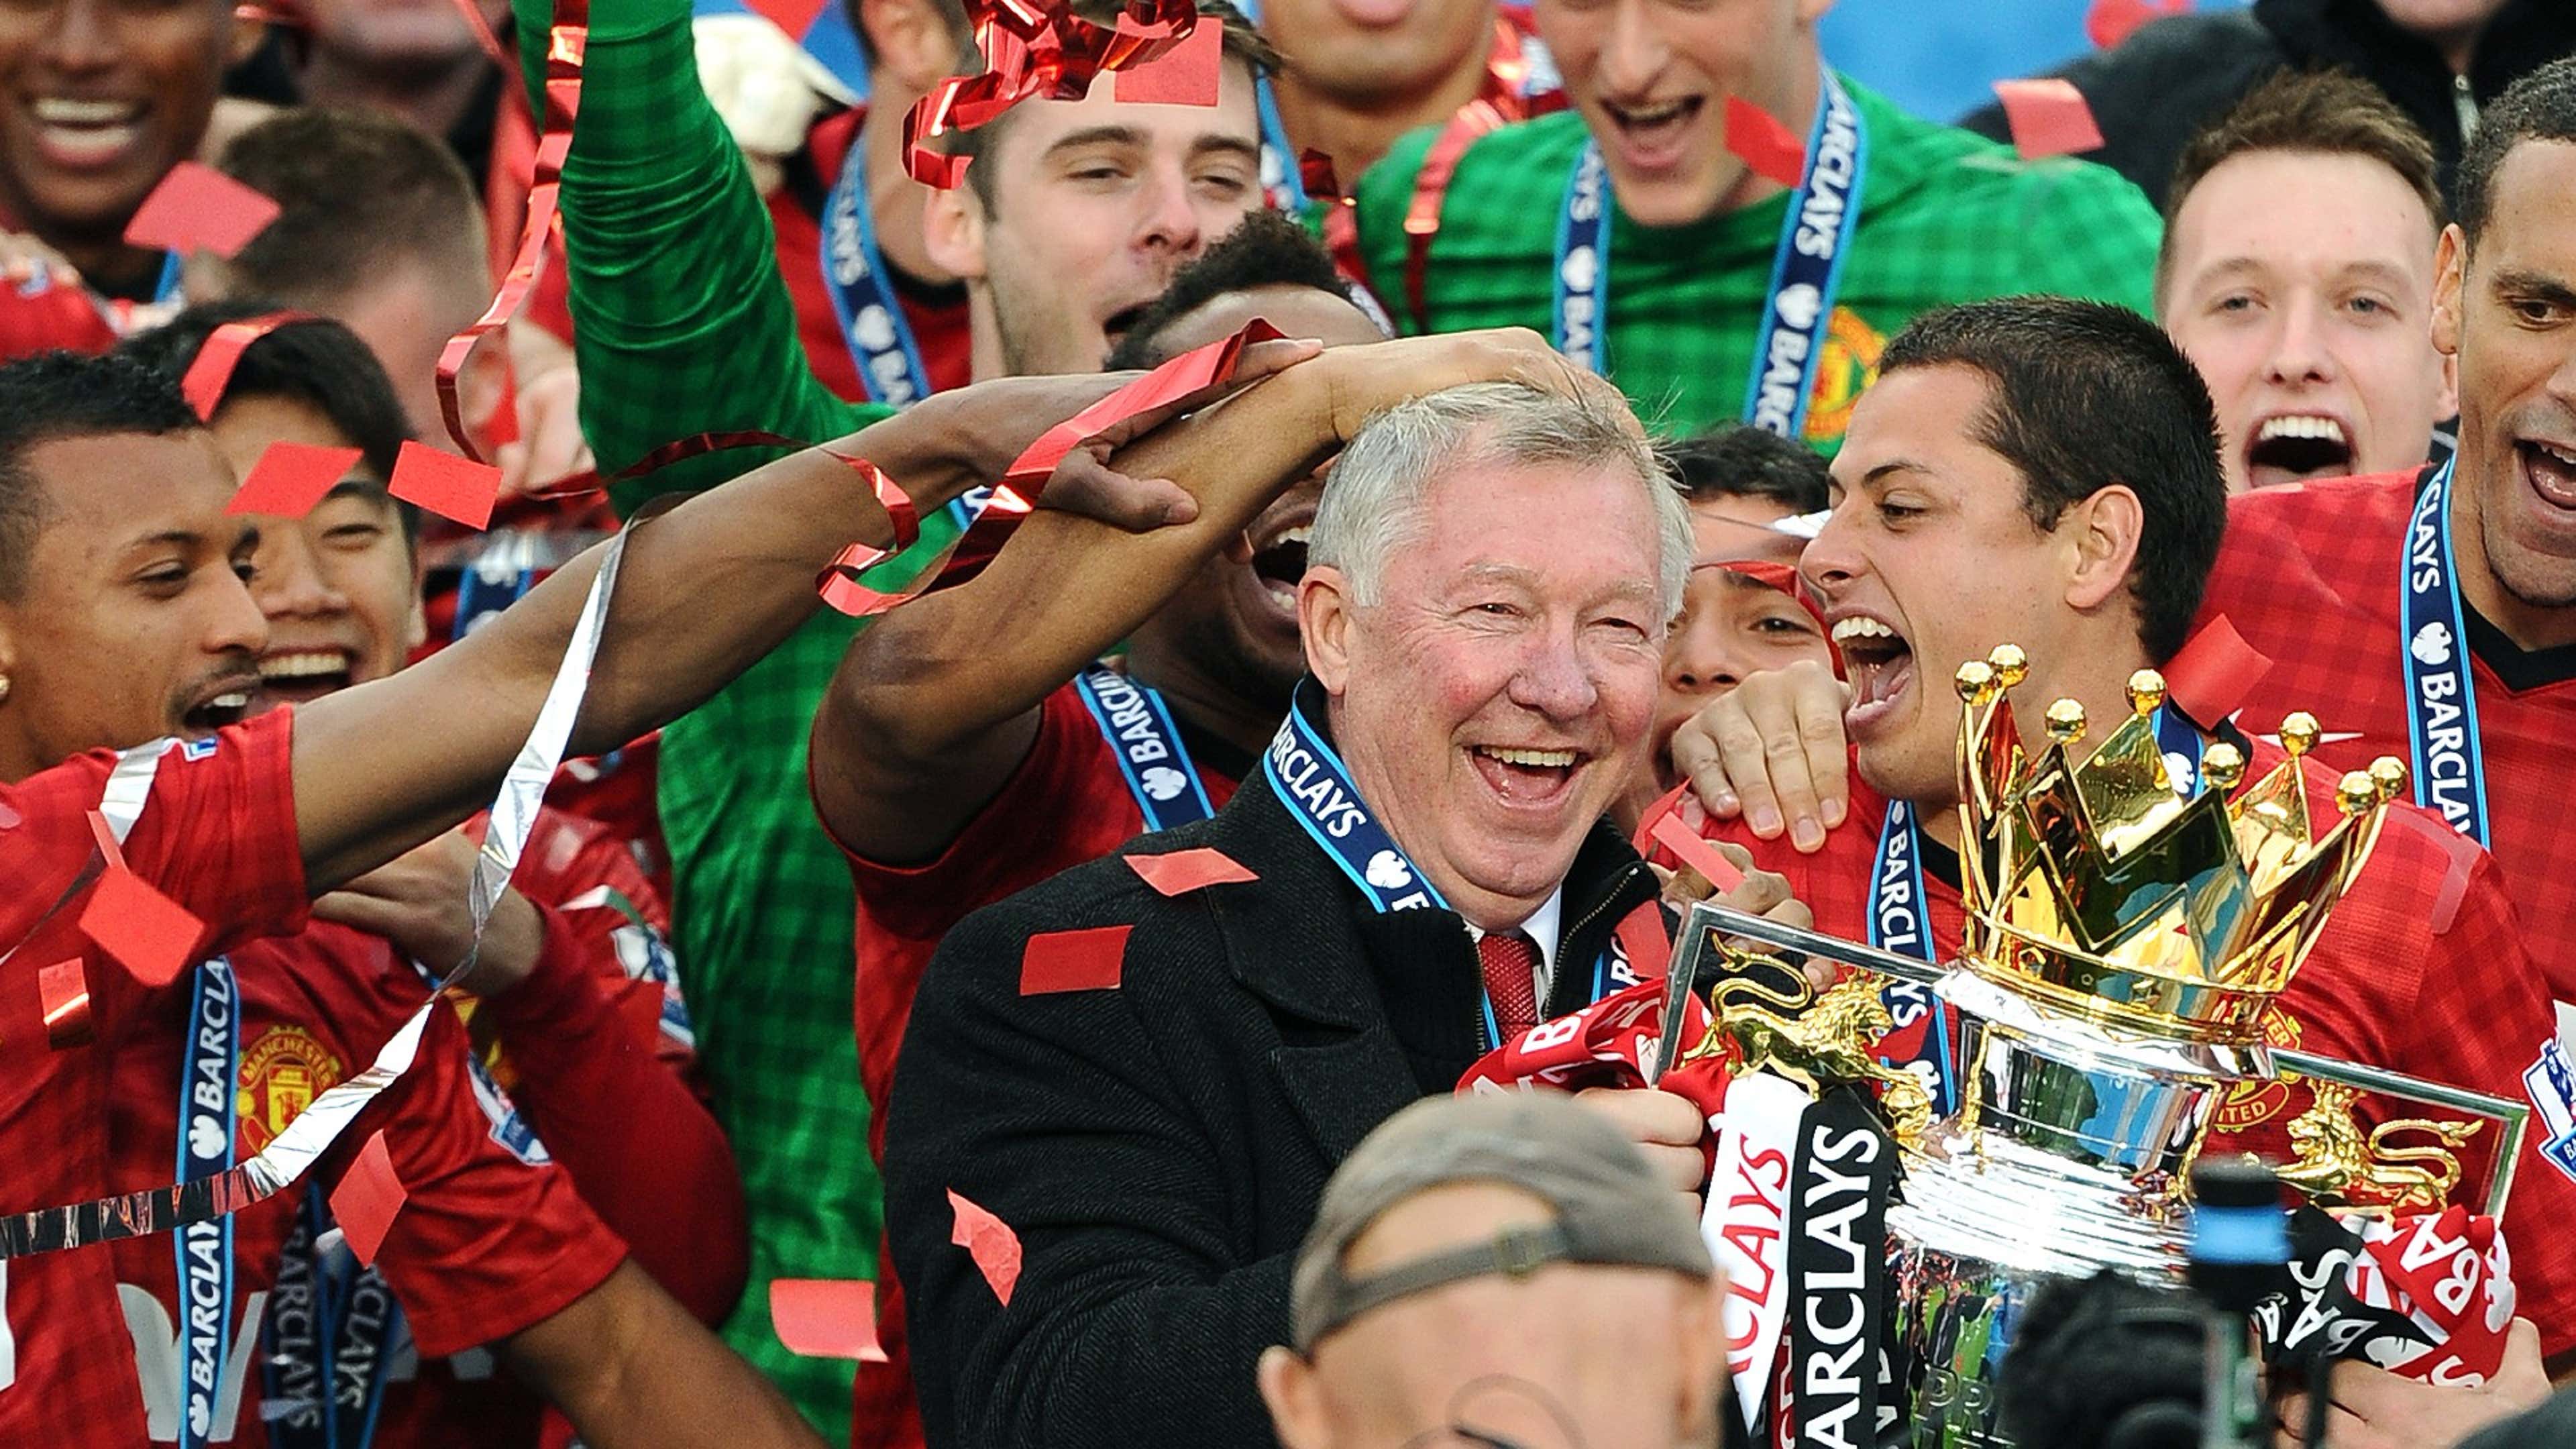 Manchester United 2012-13 Alex Ferguson Premier League trophy